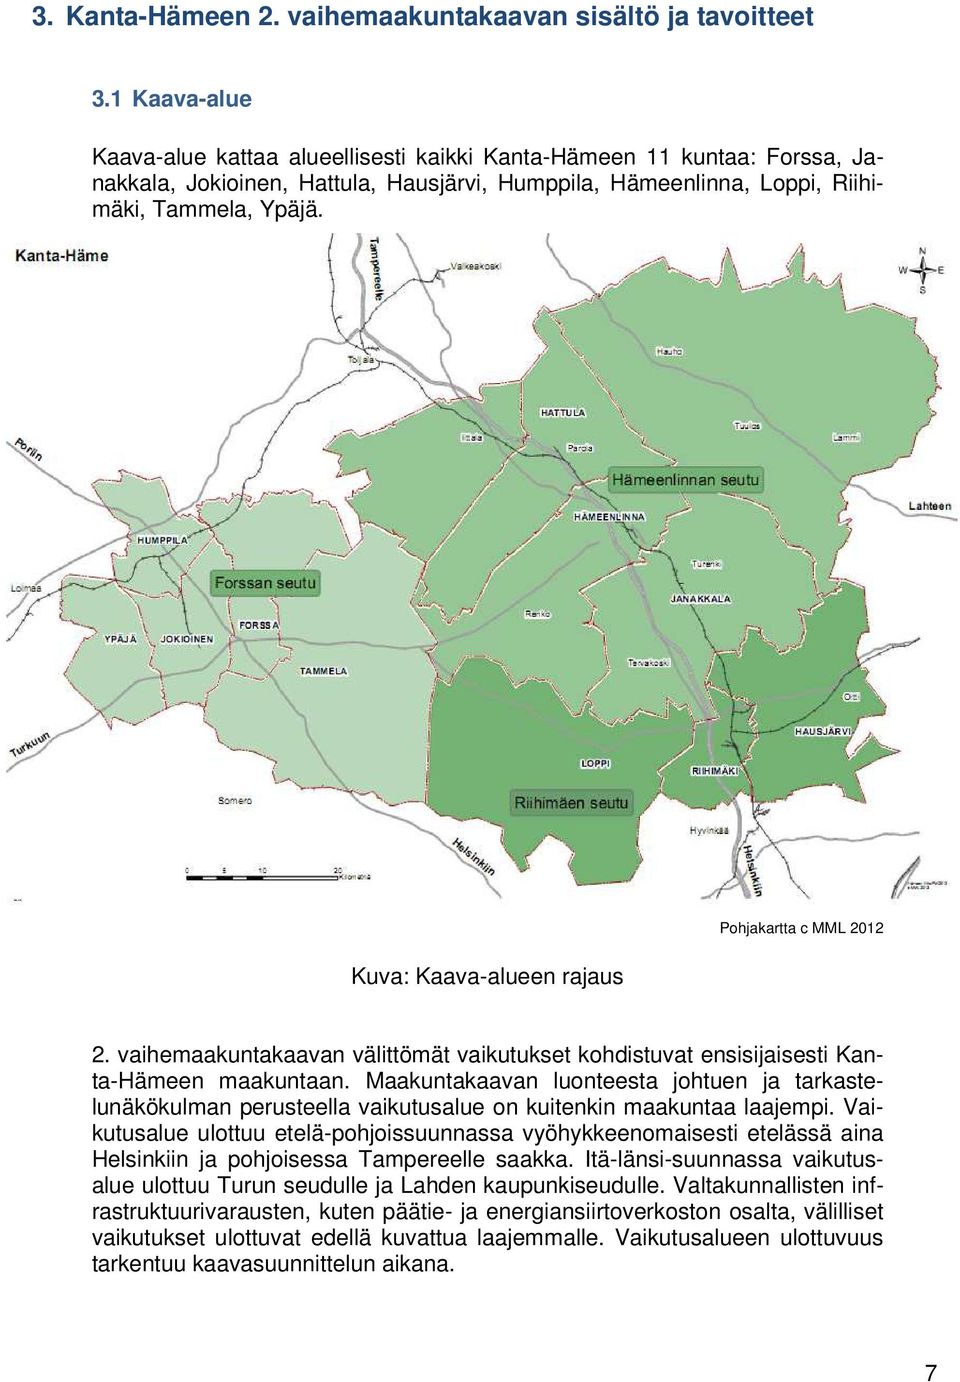 Kuva: Kaava-alueen rajaus Pohjakartta c MML 2012 2. vaihemaakuntakaavan välittömät vaikutukset kohdistuvat ensisijaisesti Kanta-Hämeen maakuntaan.